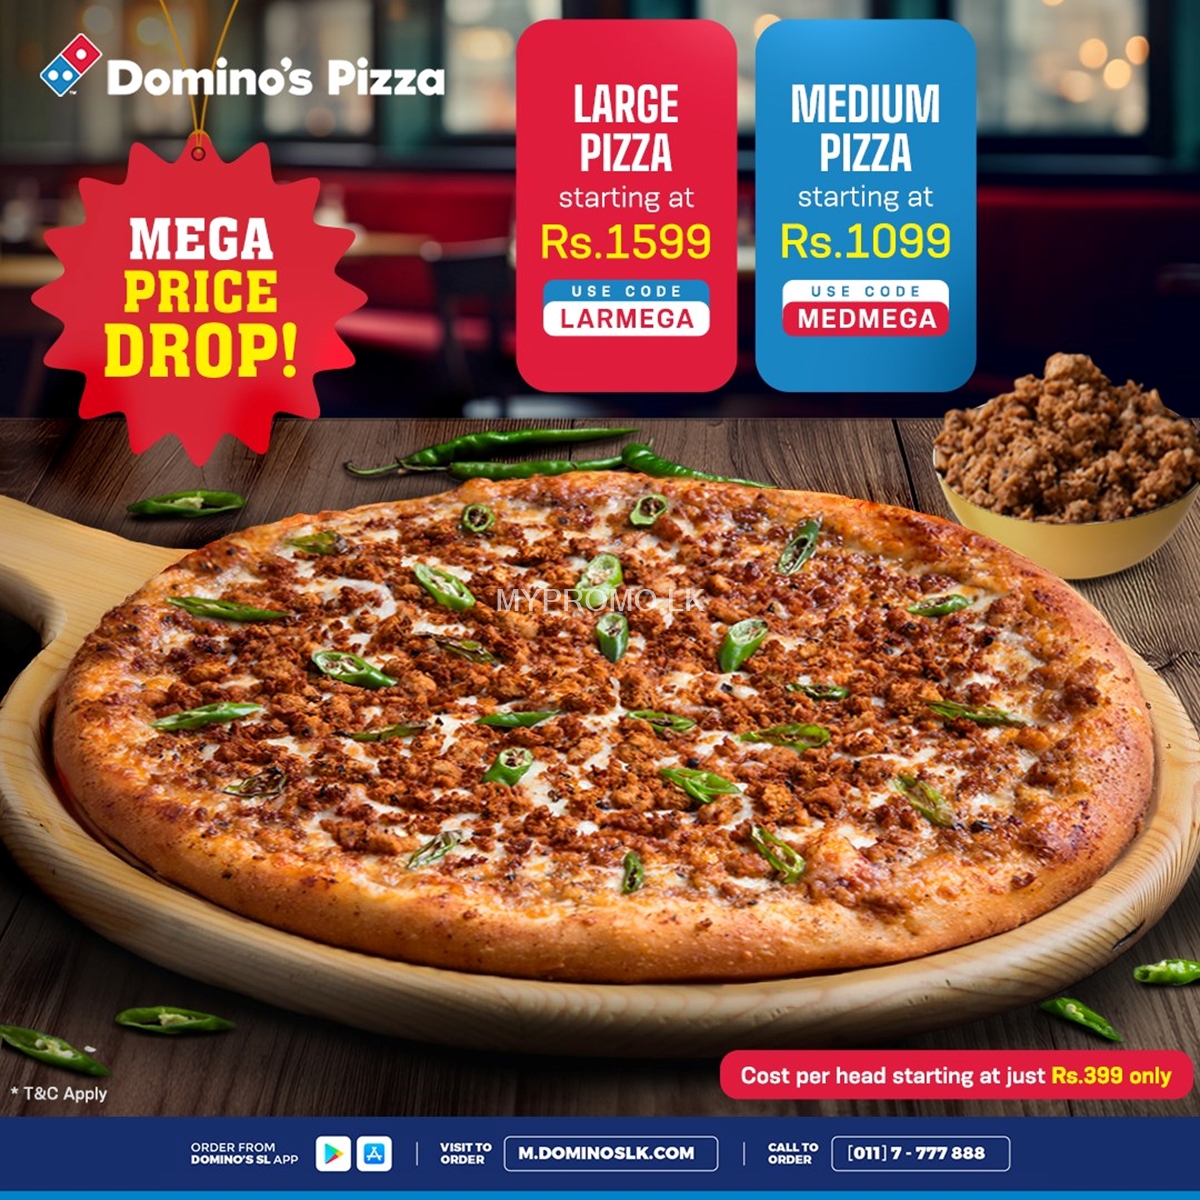 MEGA Price Drop at Domino's Pizza 